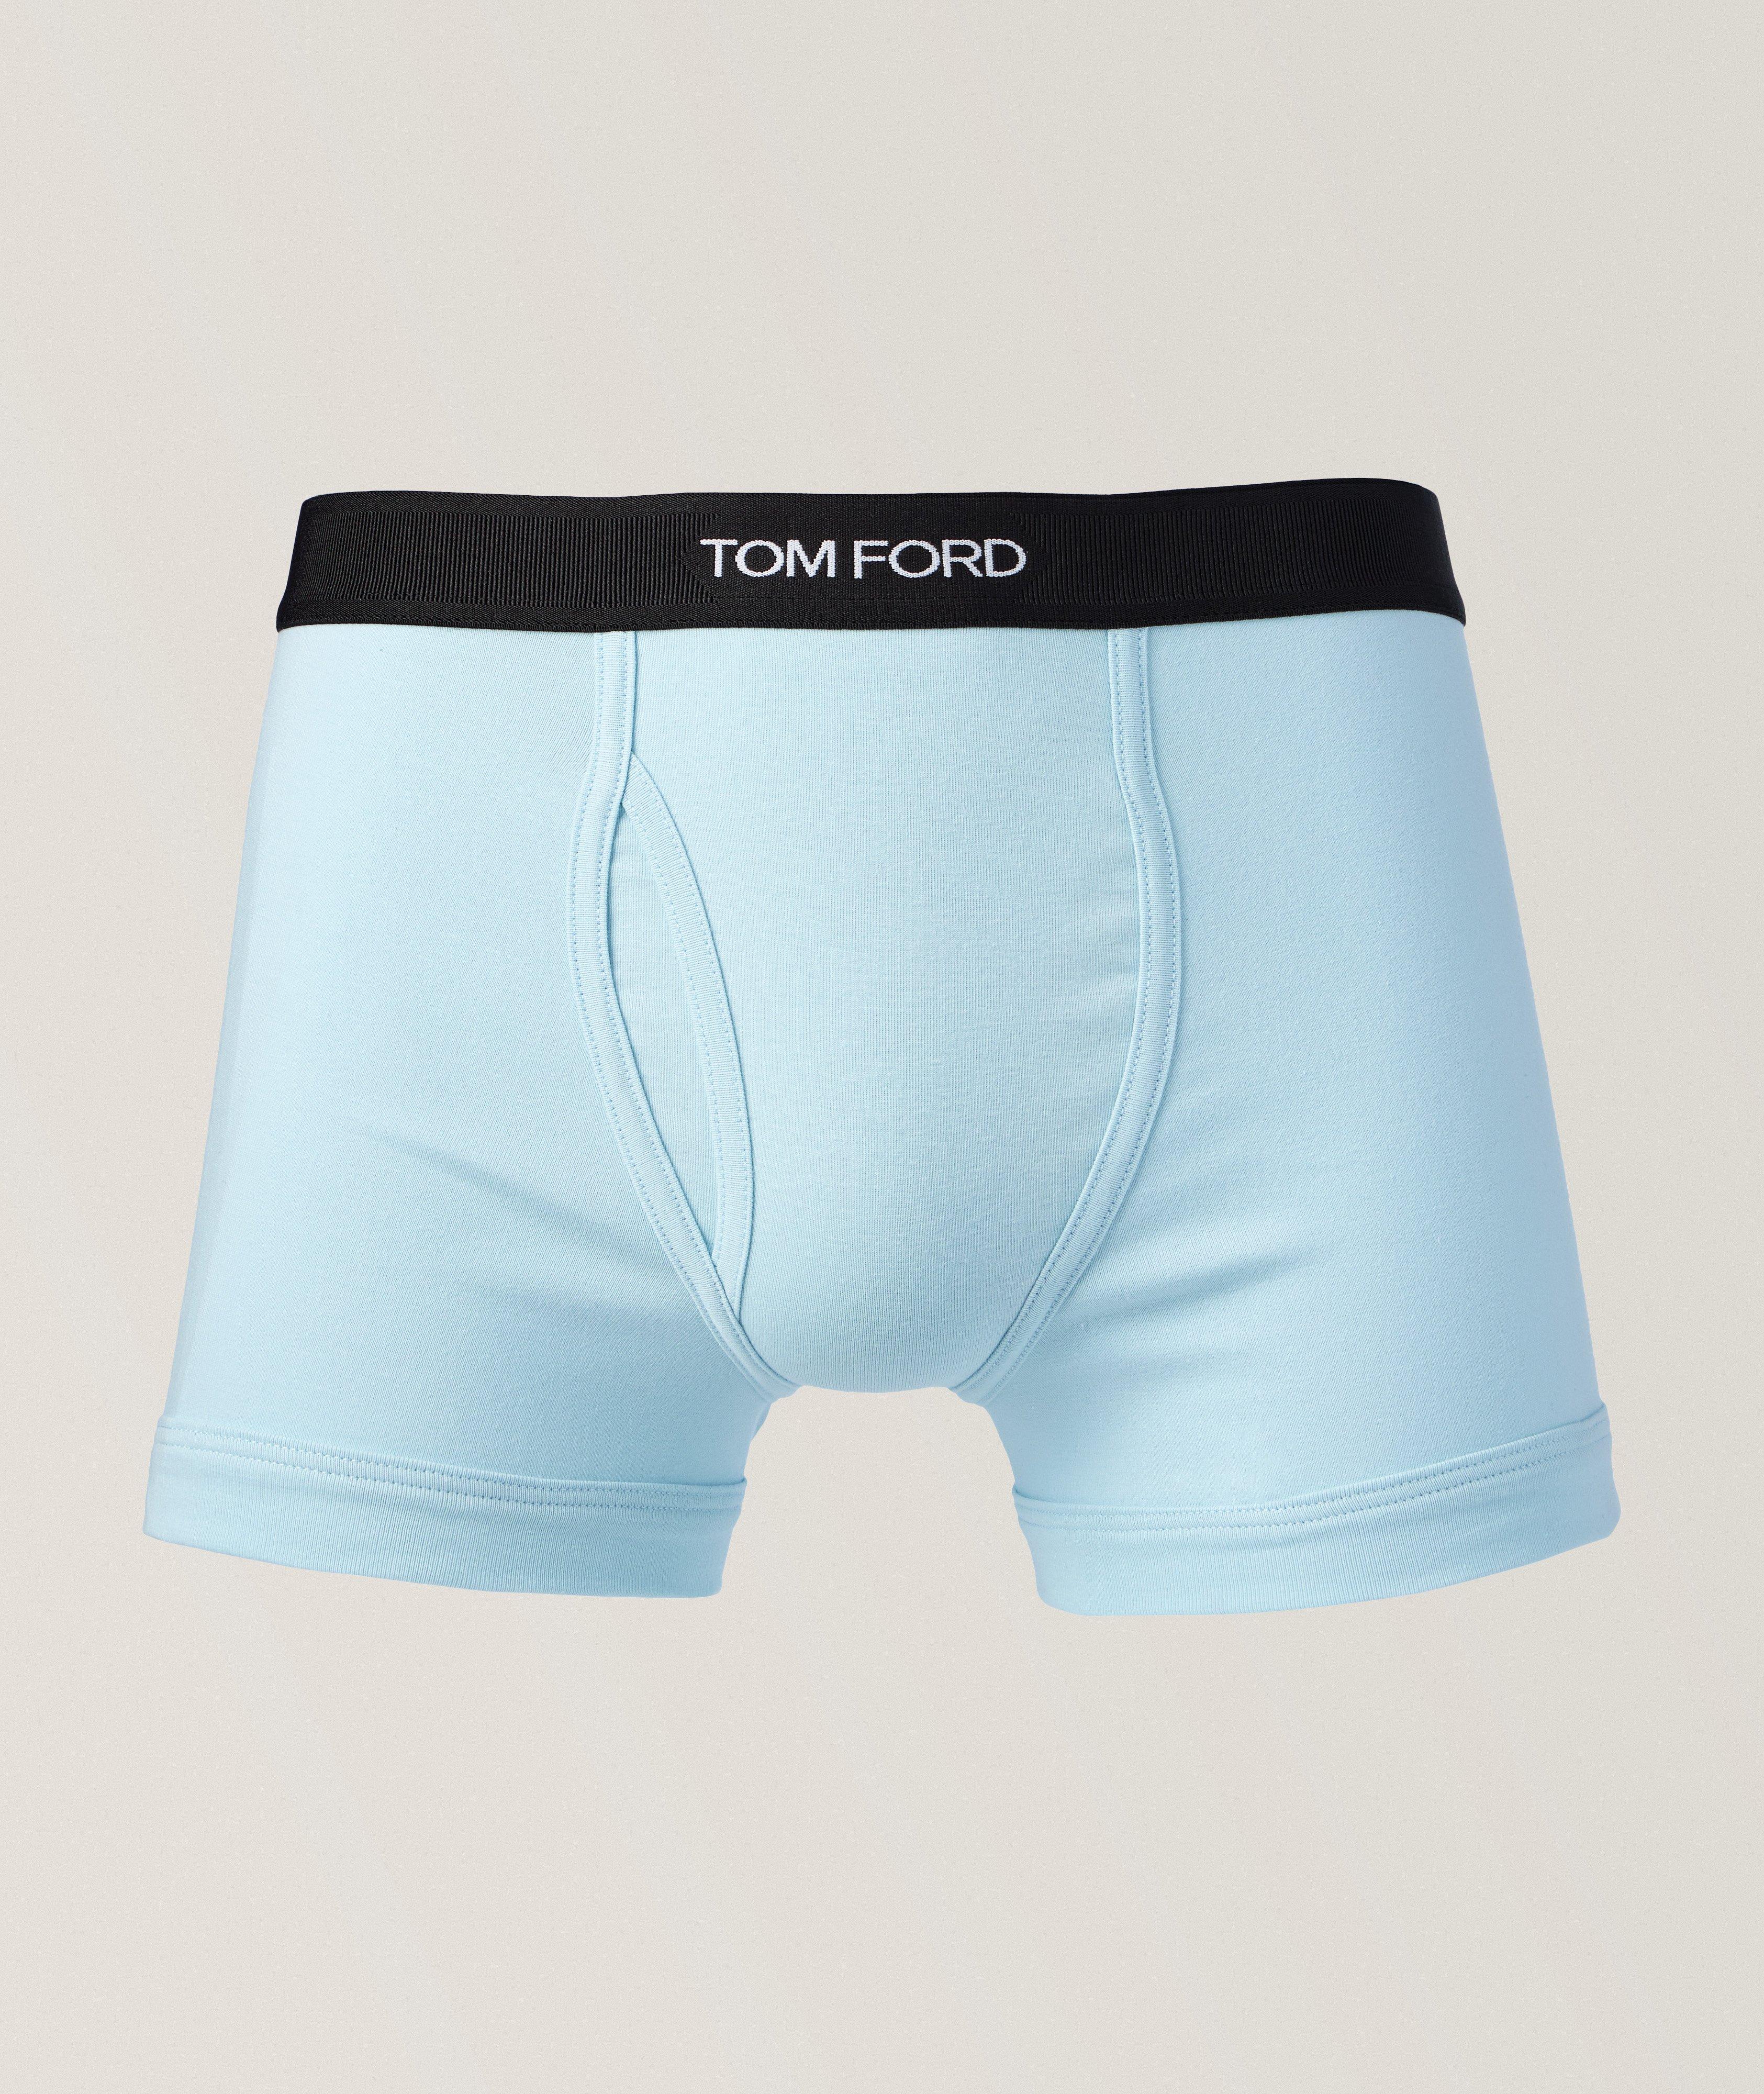 TOM FORD Solid Stretch-Cotton Jersey Boxer Briefs, Underwear